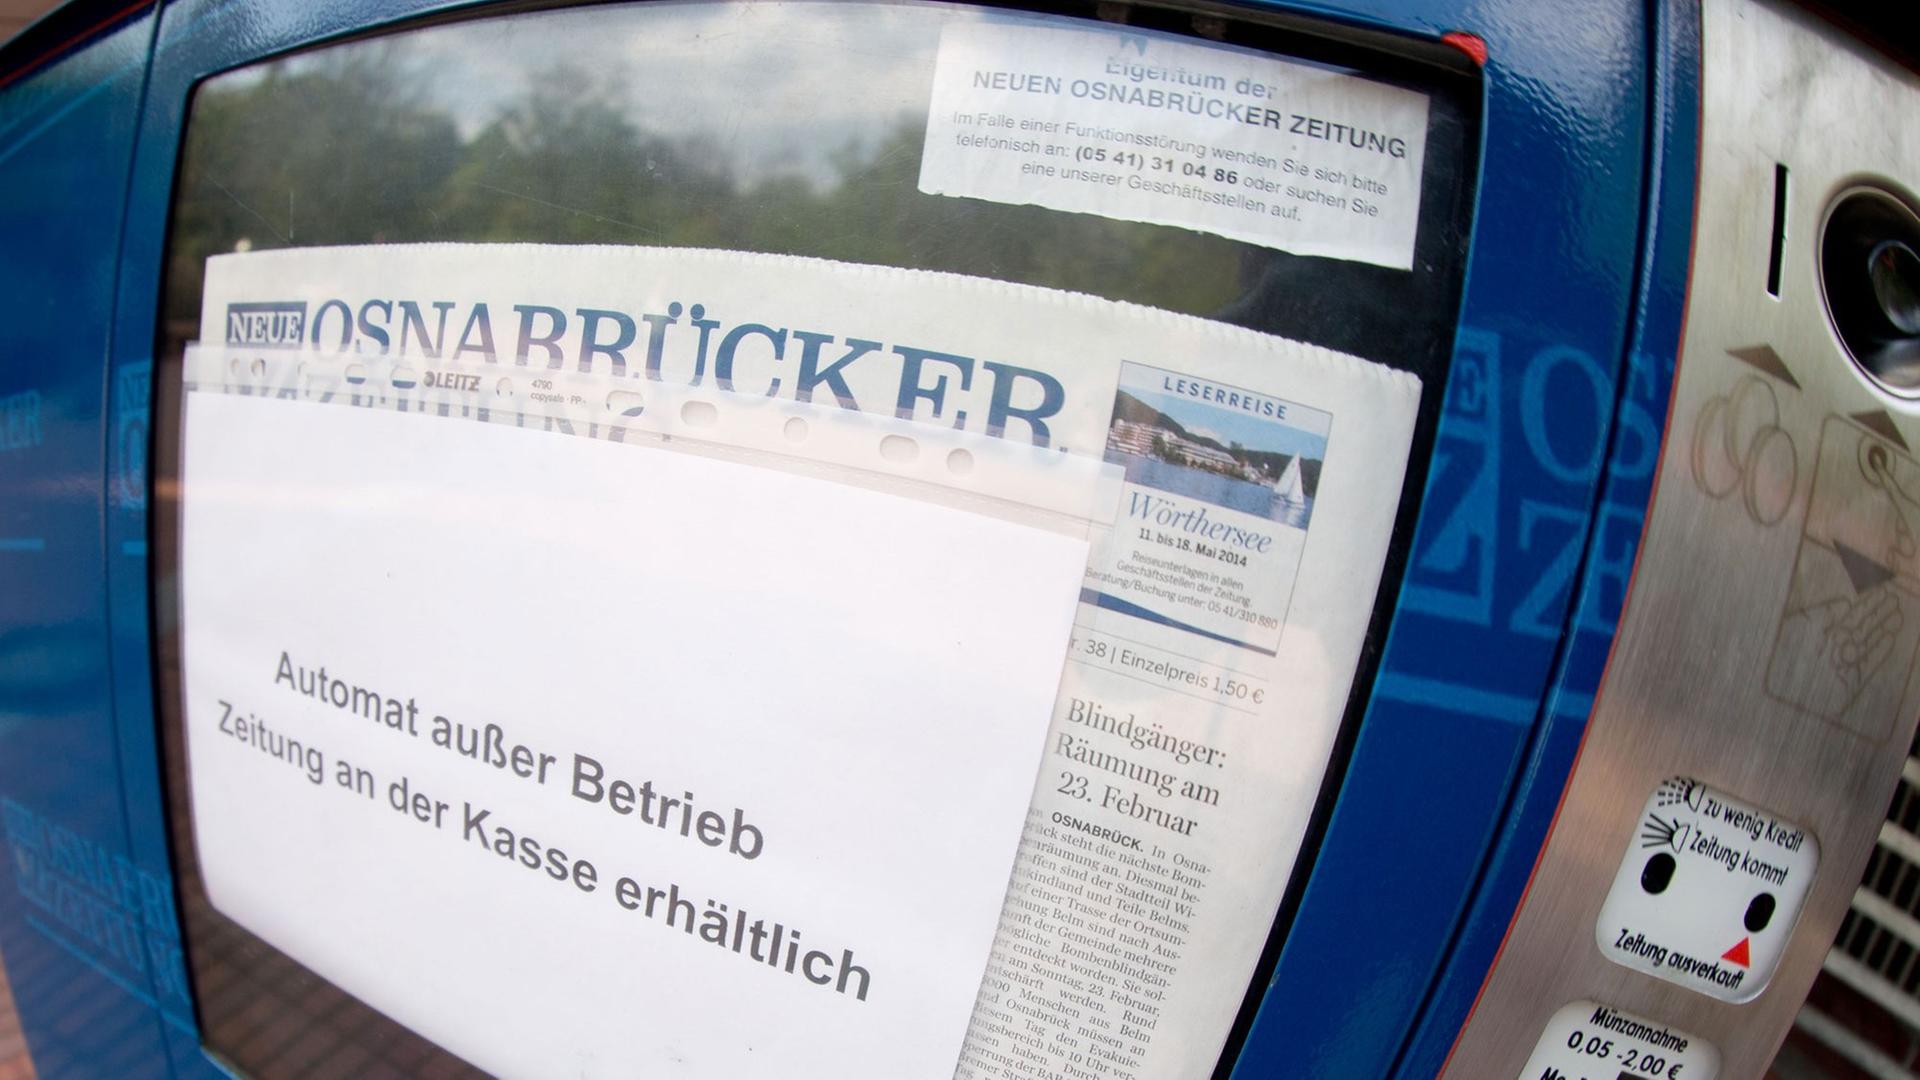 Defekter Zeitungsautomat mit der Neuen Osnabrücker Zeitung